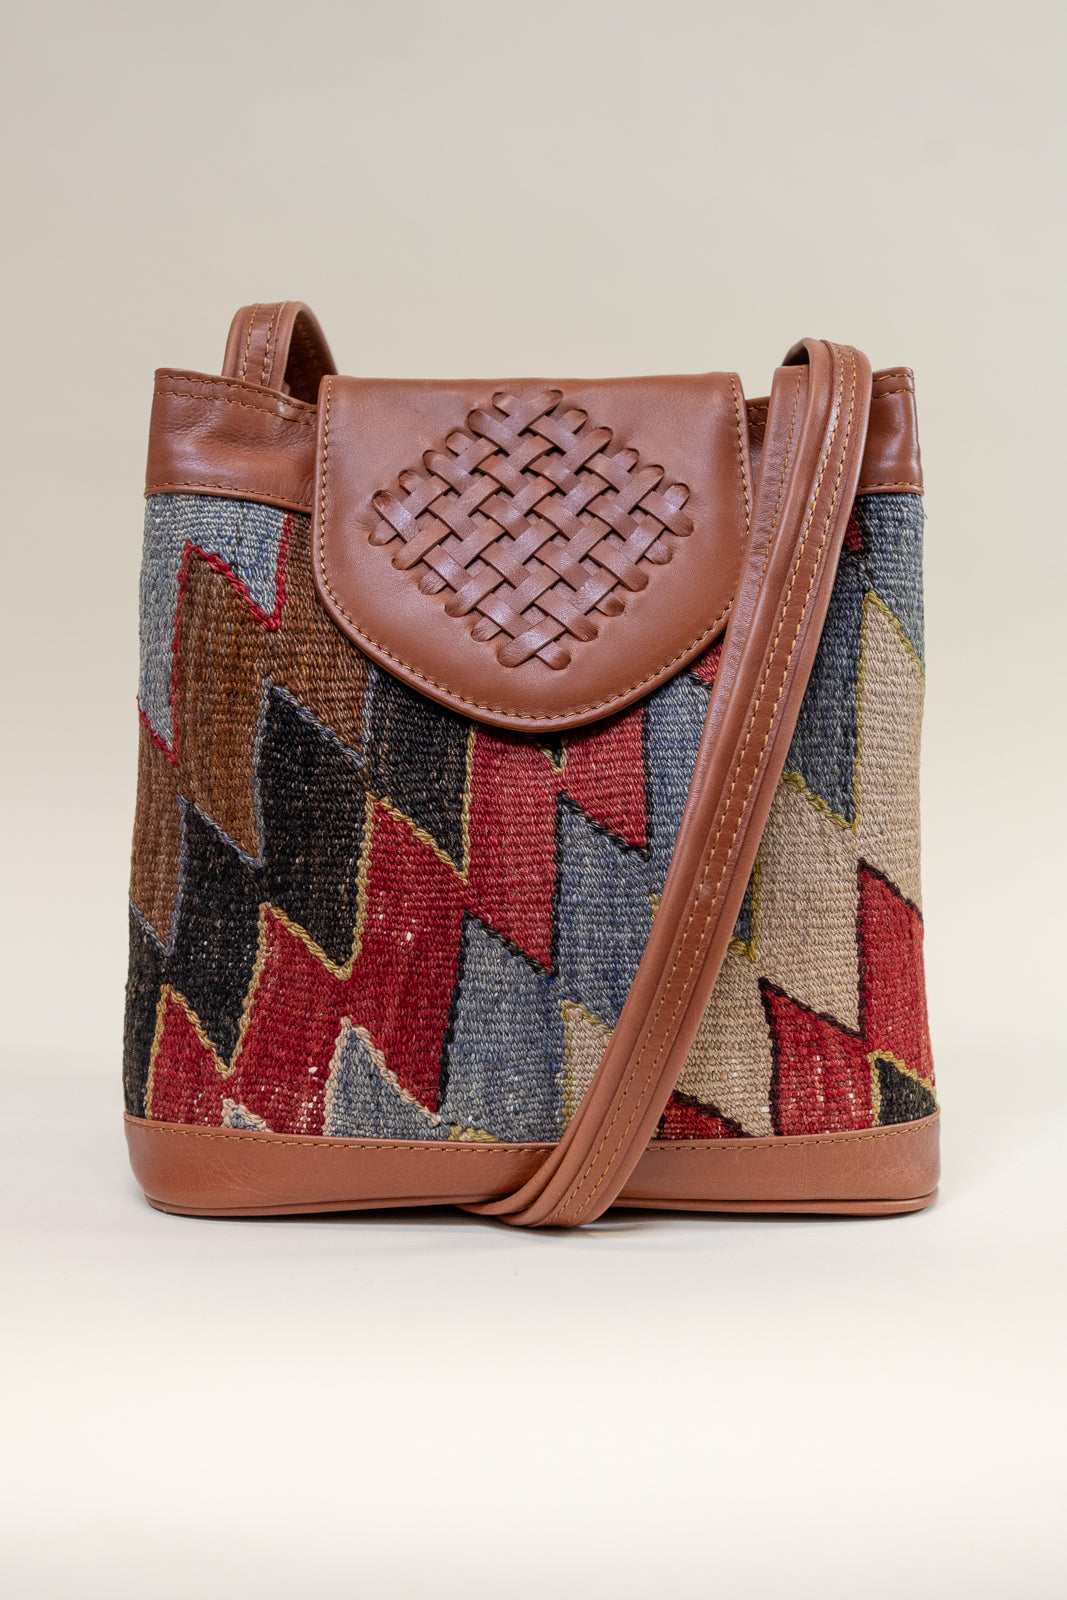 Amazon.com: Carpet Bag, Kilim Bag, Anatolian Bag, Traditional Kilim Bag,  Bags for Women, 12x14, Women Casual Kilim Bag, Handmade Rug Bag, Gift for  Her, : Home & Kitchen